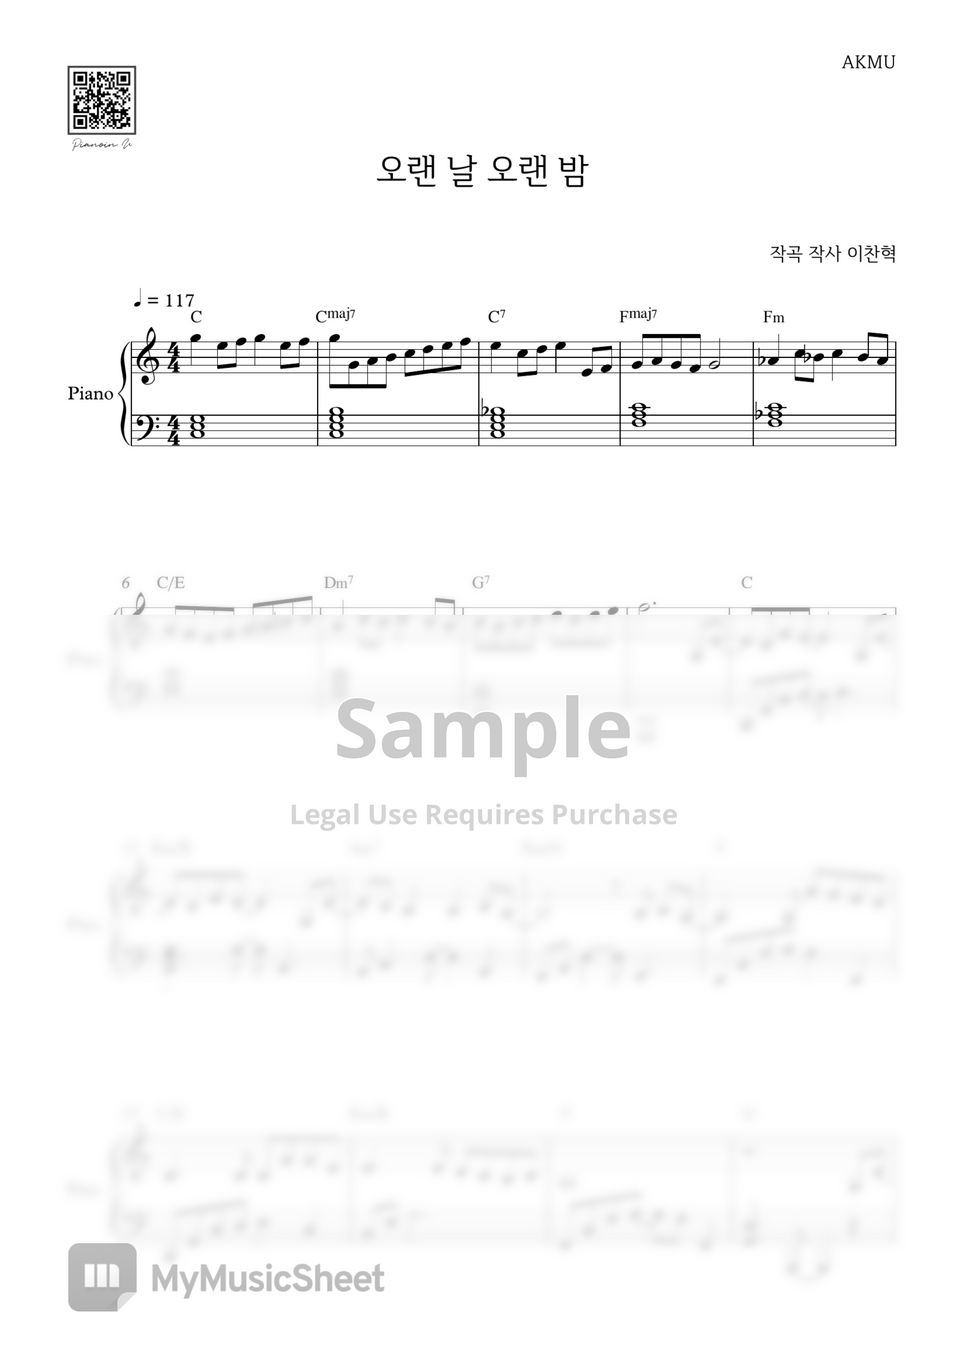 AKMU(악동뮤지션) - LAST GOODBYE(오랜 날, 오랜 밤) by PIANOiNU